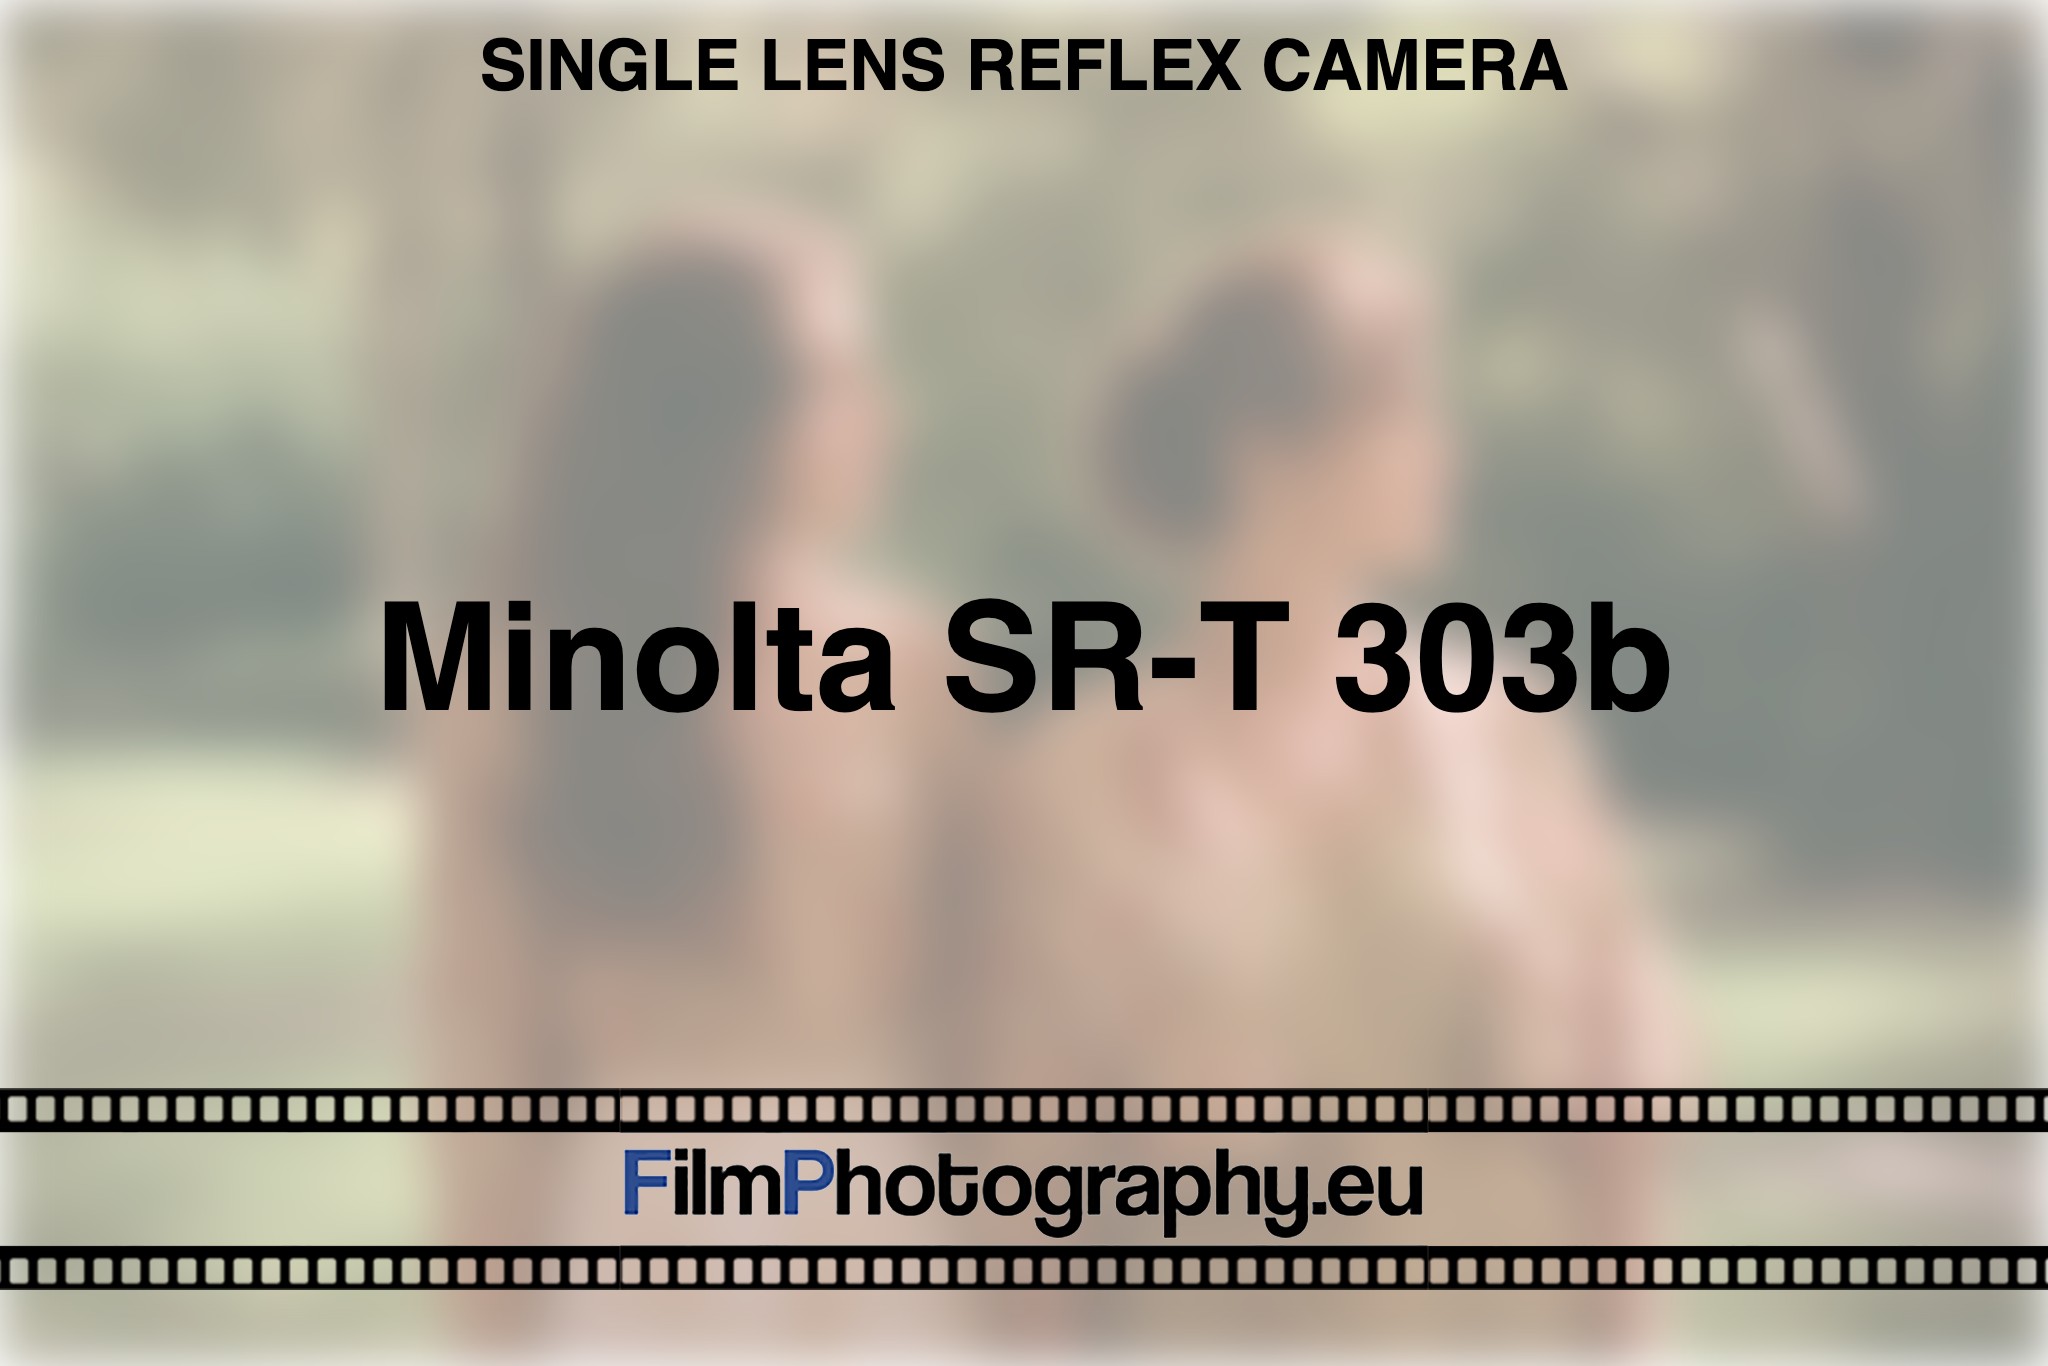 minolta-sr-t-303b-single-lens-reflex-camera-bnv